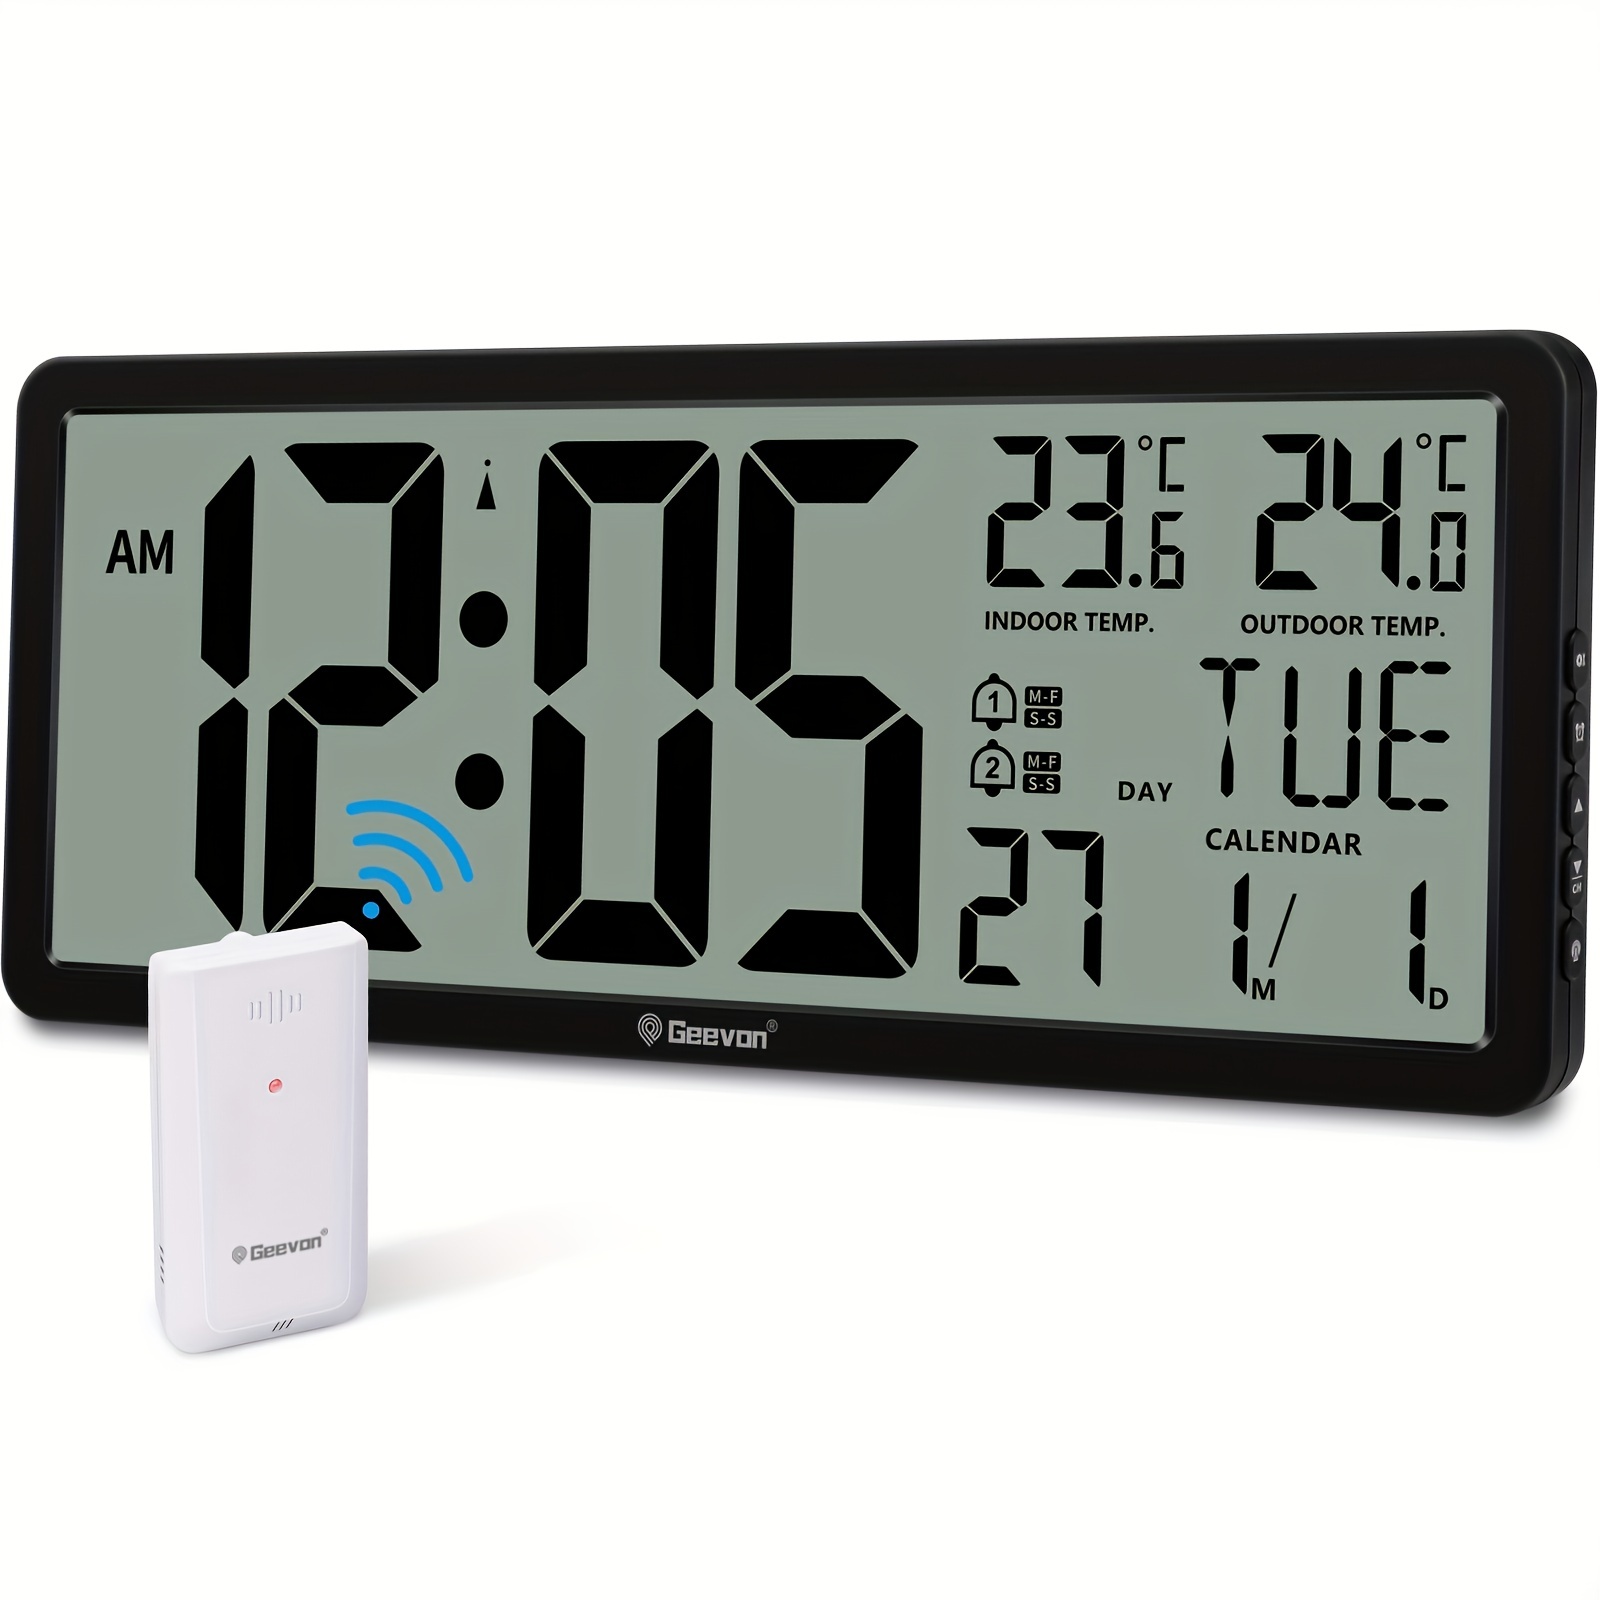 Aierwill-Reloj de pared Digital N6, alarma grande de 16 pulgadas, Control  remoto, fecha, semana, temperatura, alarmas duales, pantalla LED